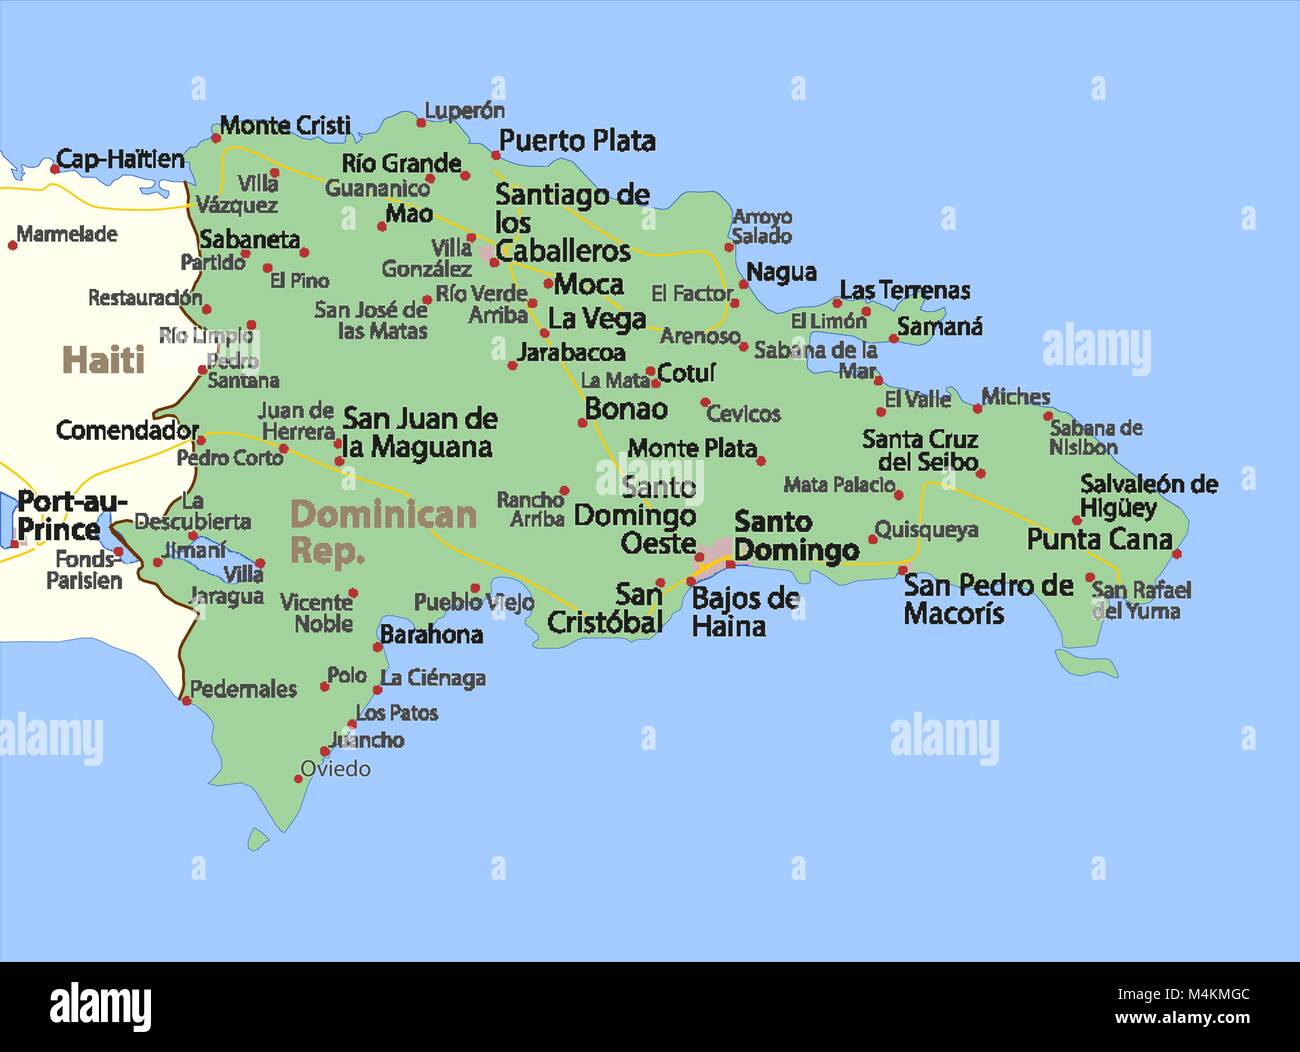 Mappa di Repubblica Dominicana. Mostra i confini, zone urbane, nomi di località e strade. Le etichette in inglese dove possibile. Proiezione: proiezione di Mercatore. Illustrazione Vettoriale